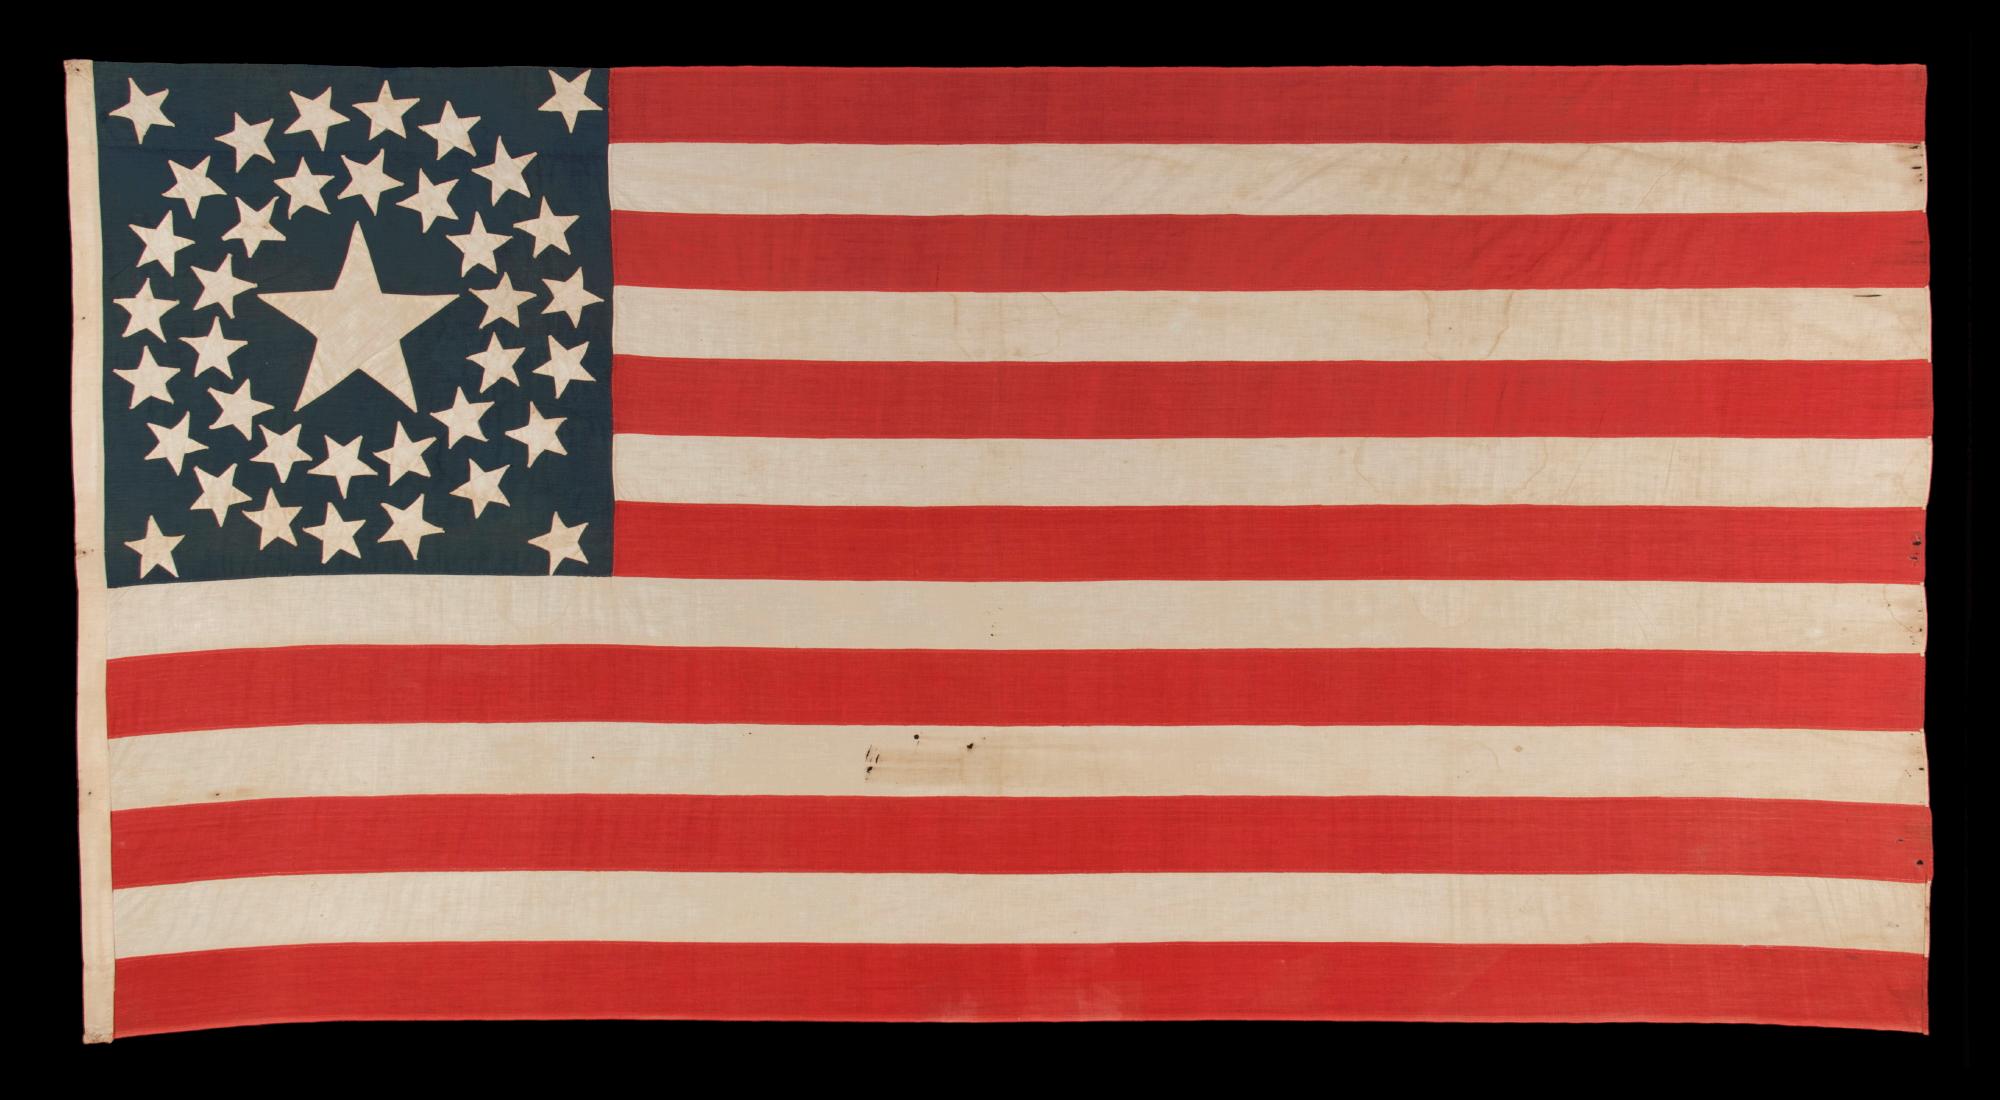 lE DRAPEAU AMÉRICAIN ANCIEN À 38 ÉTOILES, AVEC UNE CONFIGURATION À DOUBLE COURONNE COMPORTANT UNE ÉNORME ÉTOILE CENTRALE, REFLÈTE LA PÉRIODE DE CRÉATION DE L'ÉTAT DU COLORADO, DE 1876 À 1889 :

drapeau national américain à 38 étoiles, entièrement